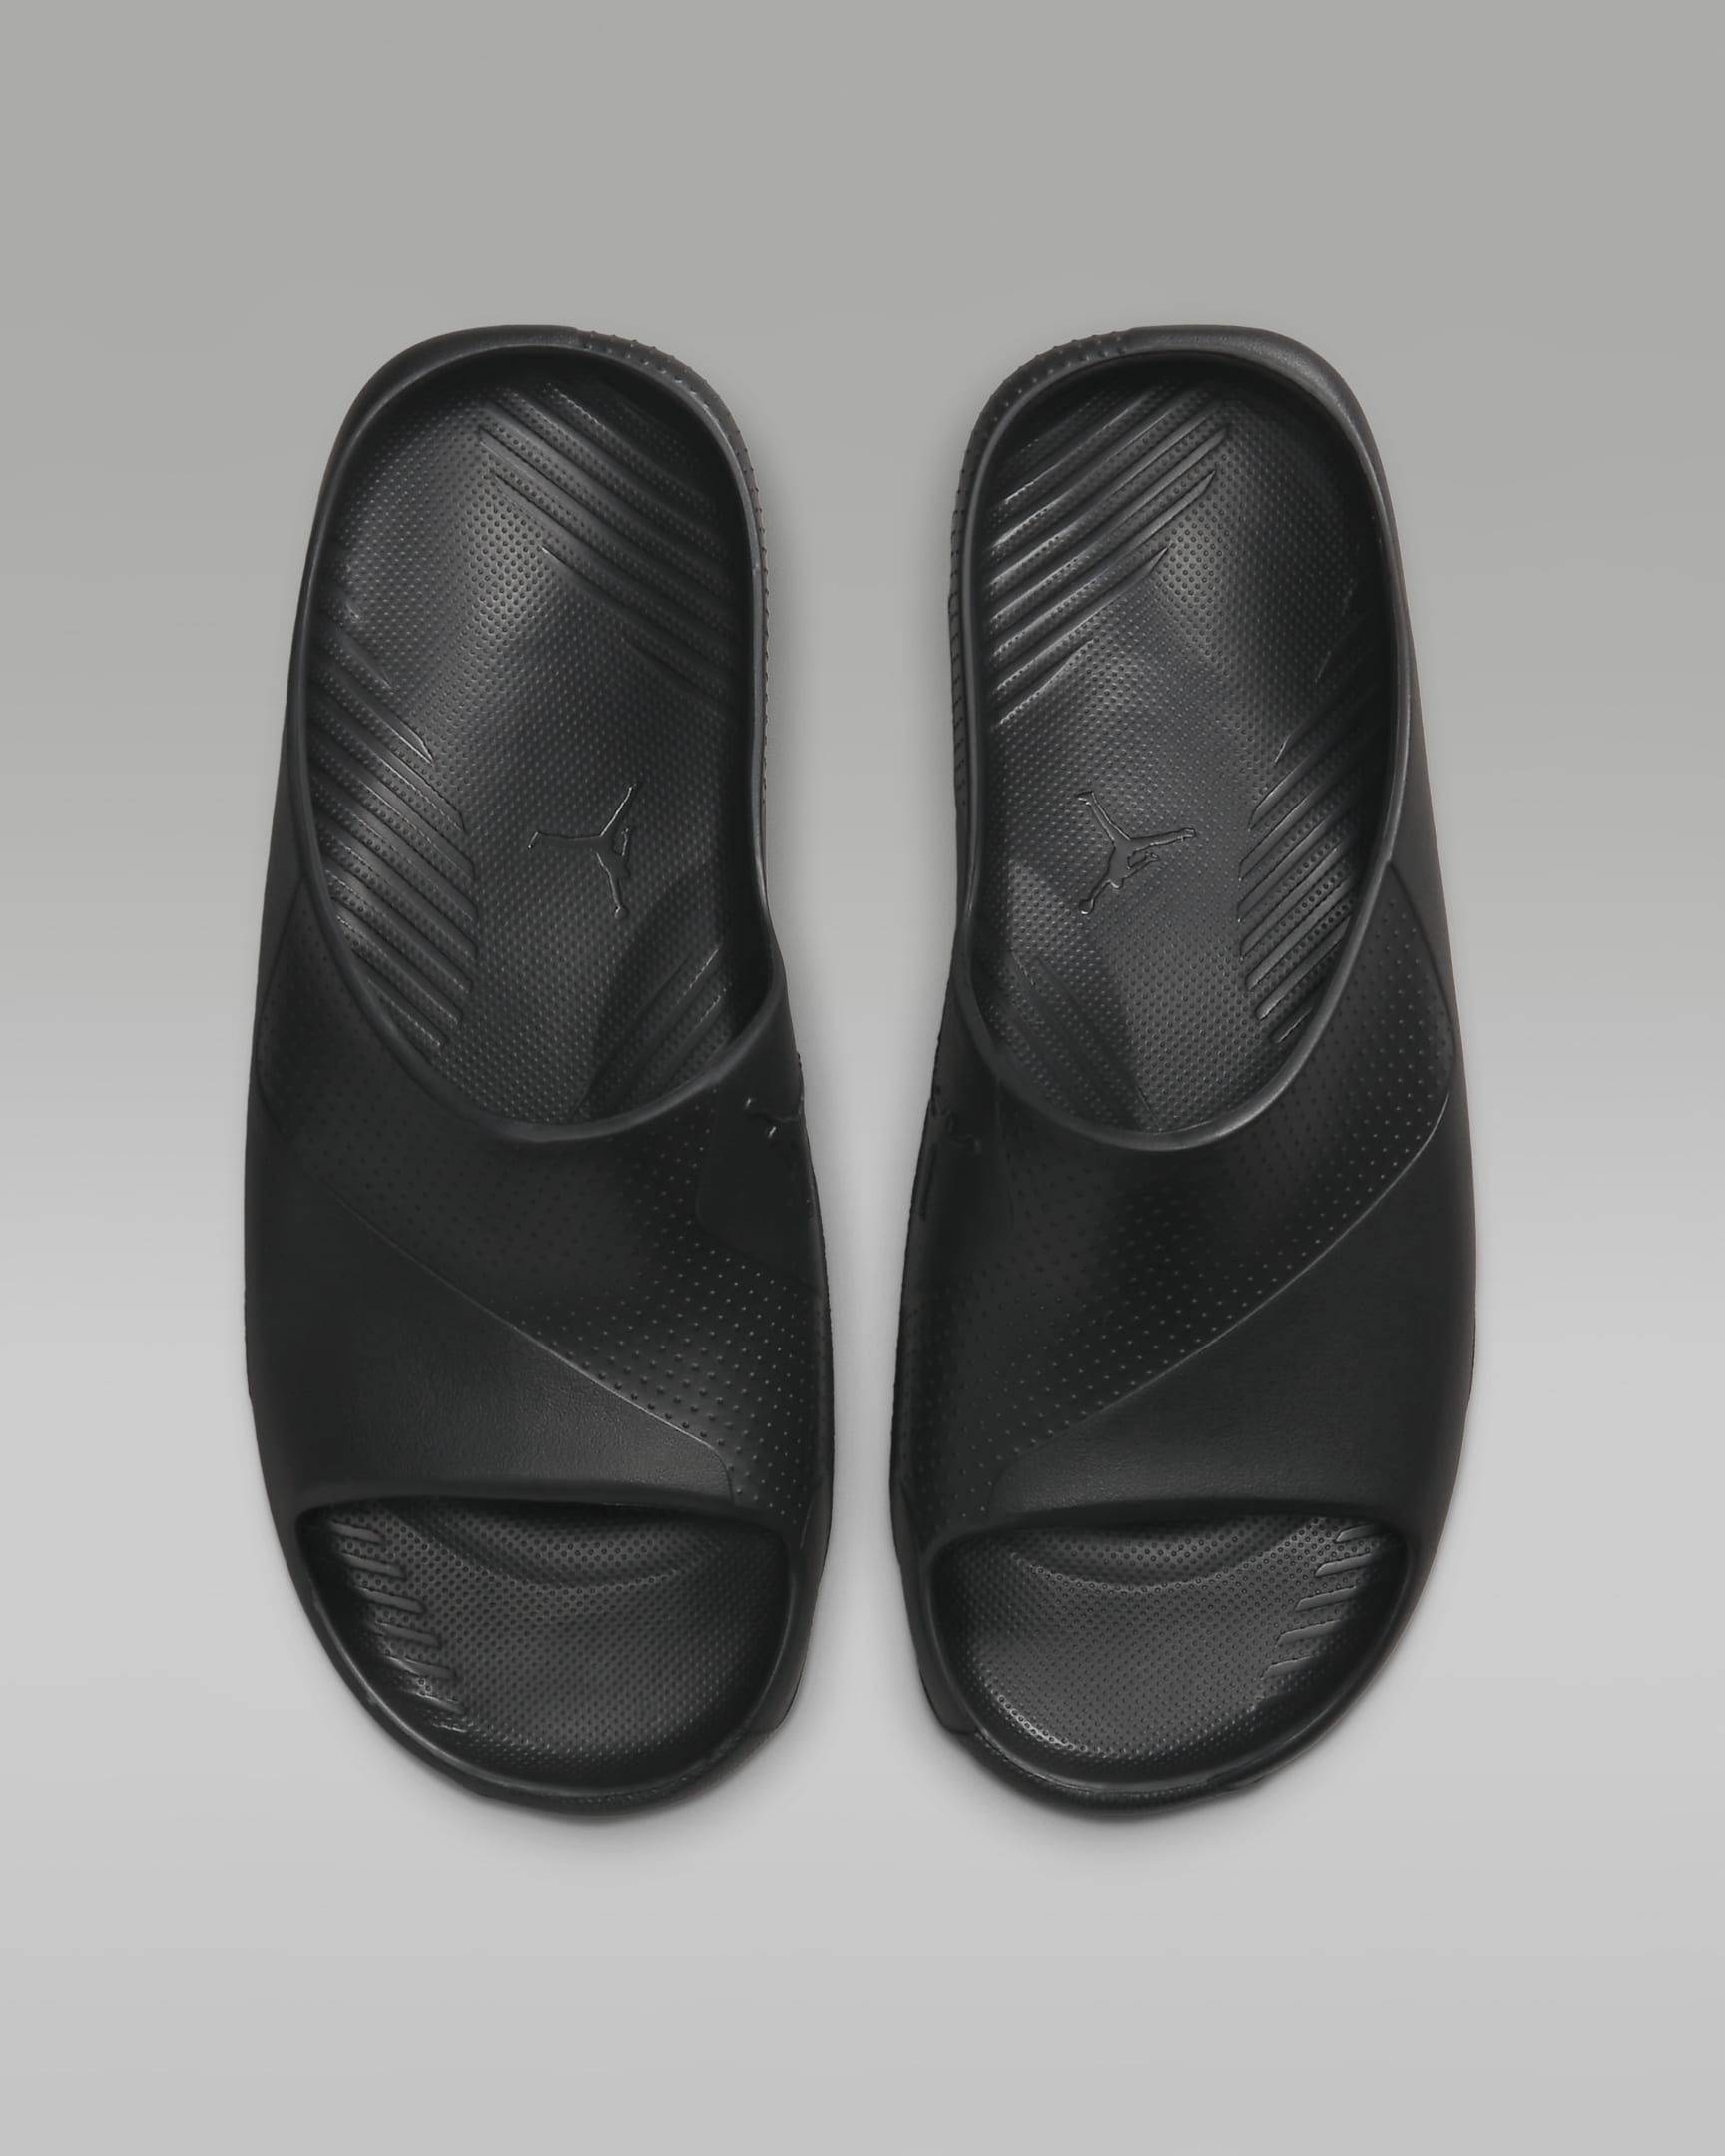 The Perfect Summer Footwear? Jordan Post Men’s Slides Review Exposed!